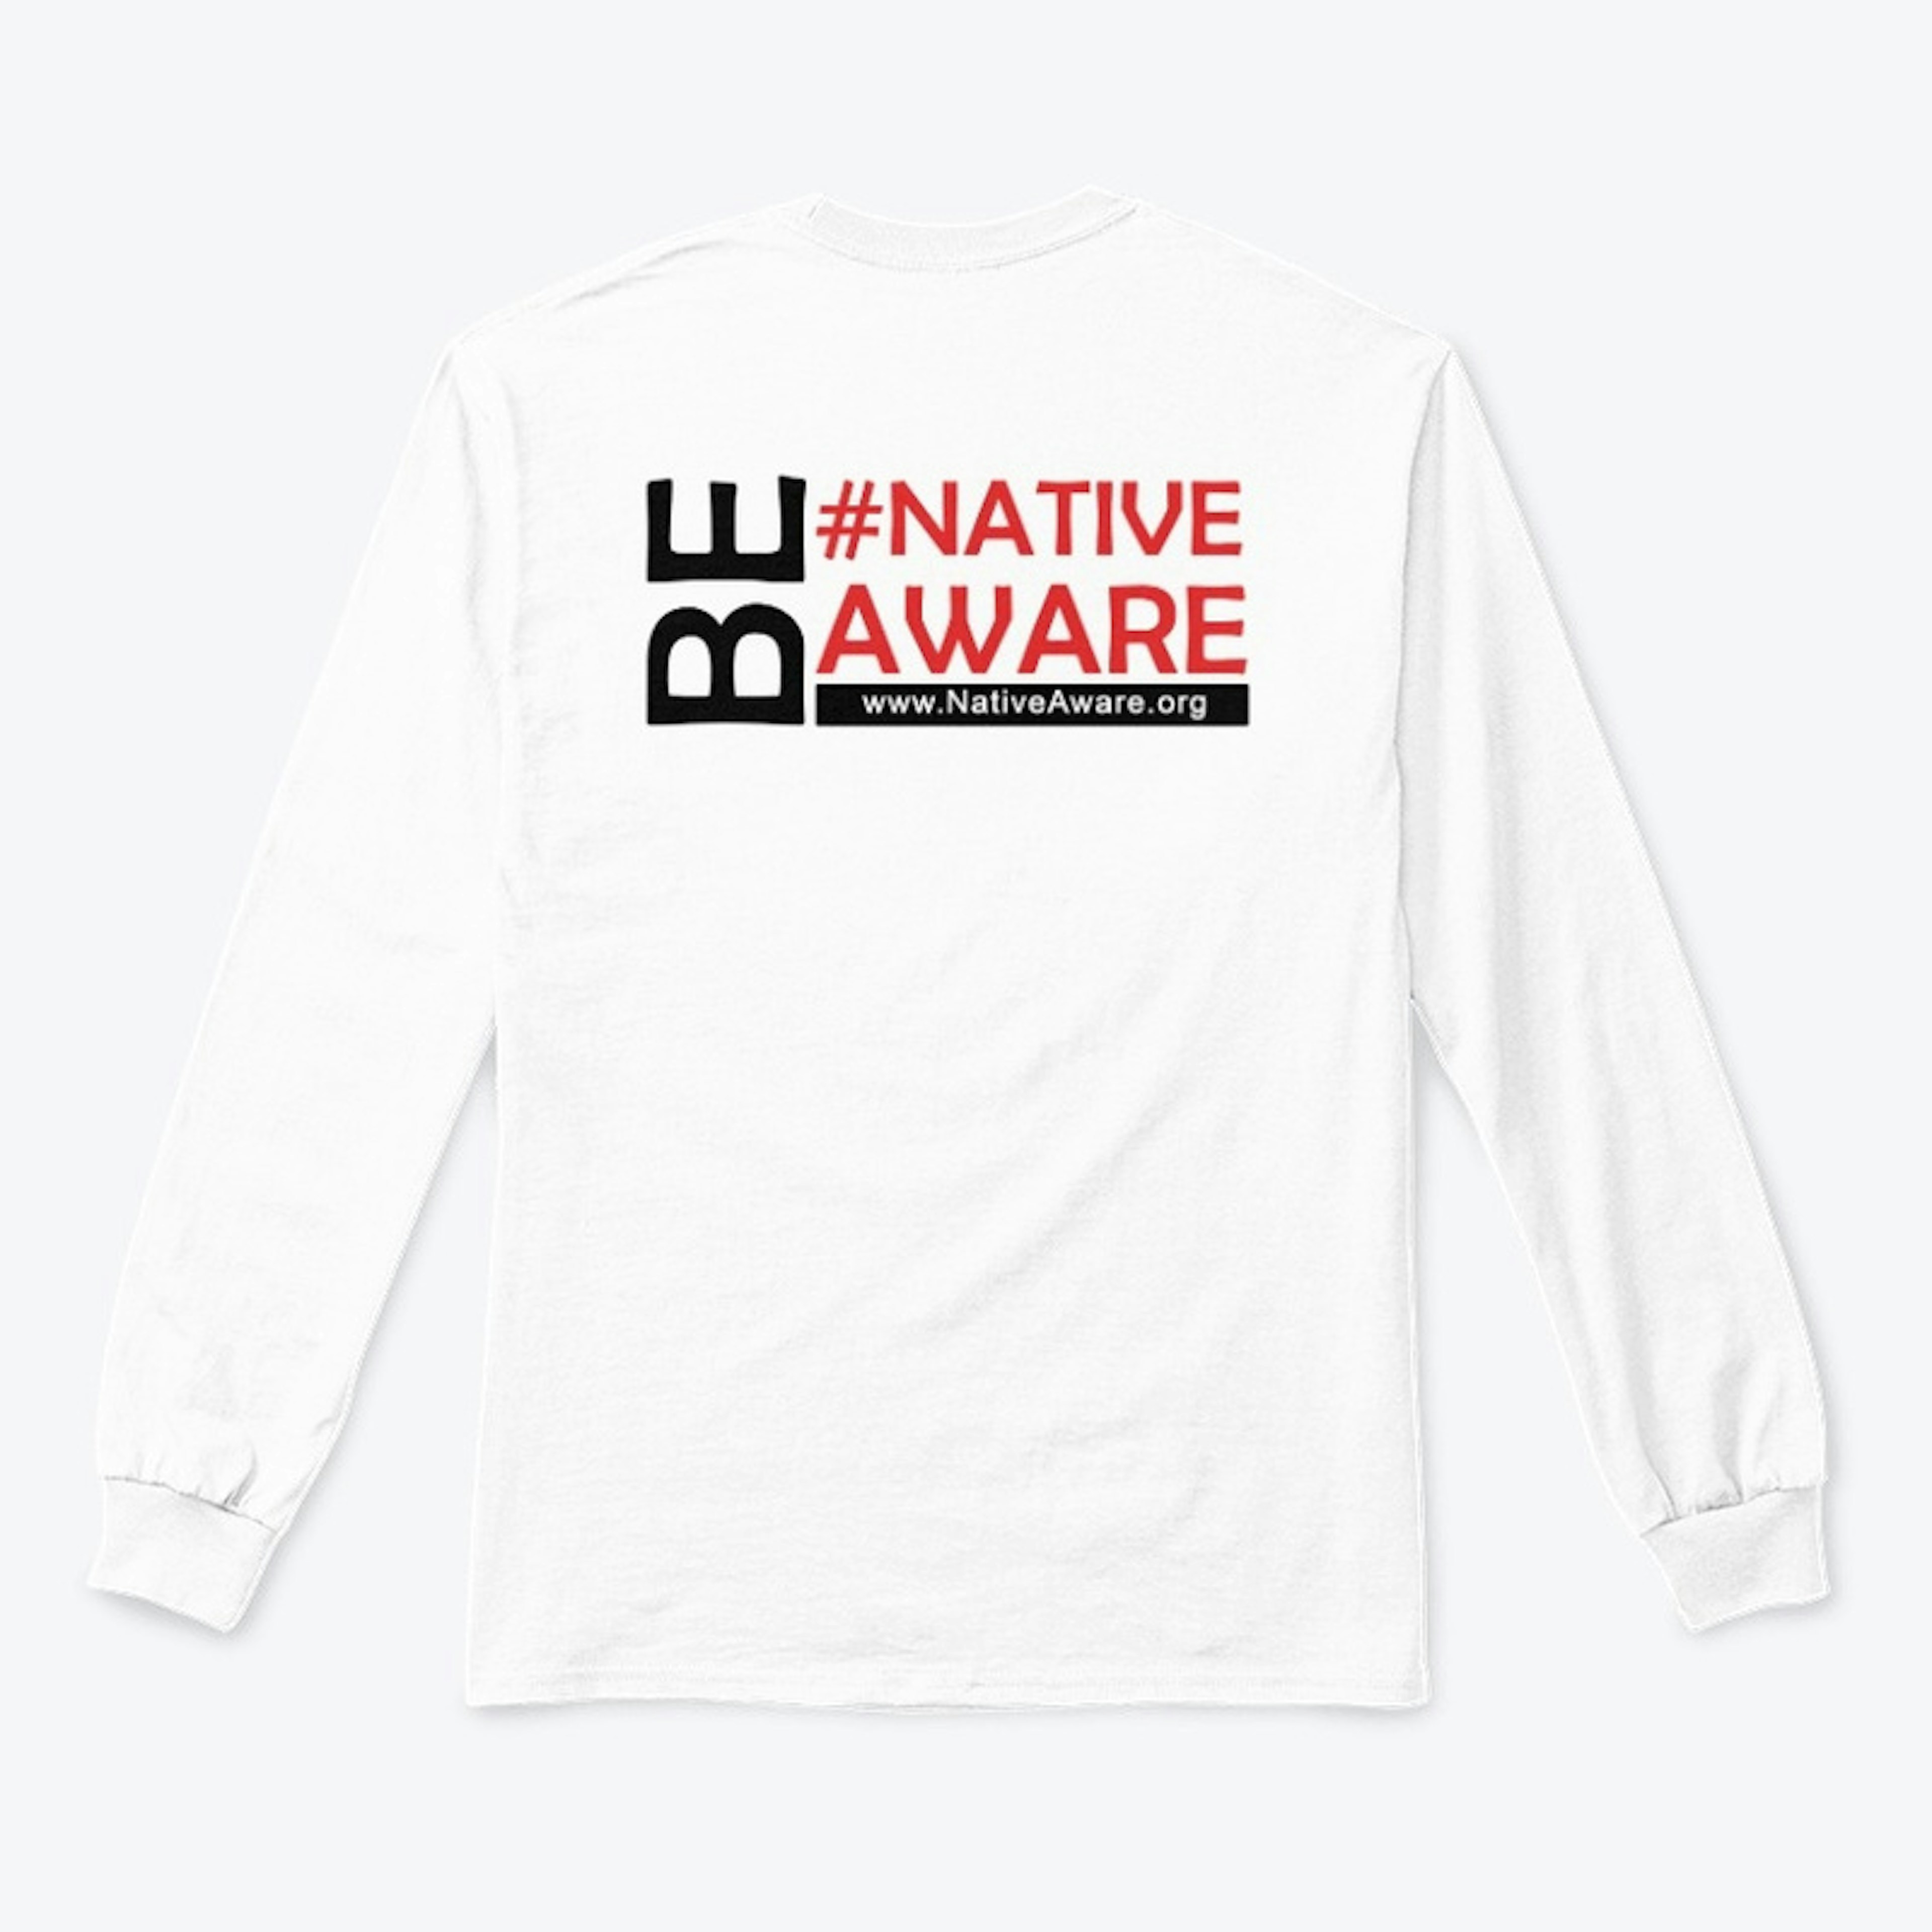 Be #NativeAware